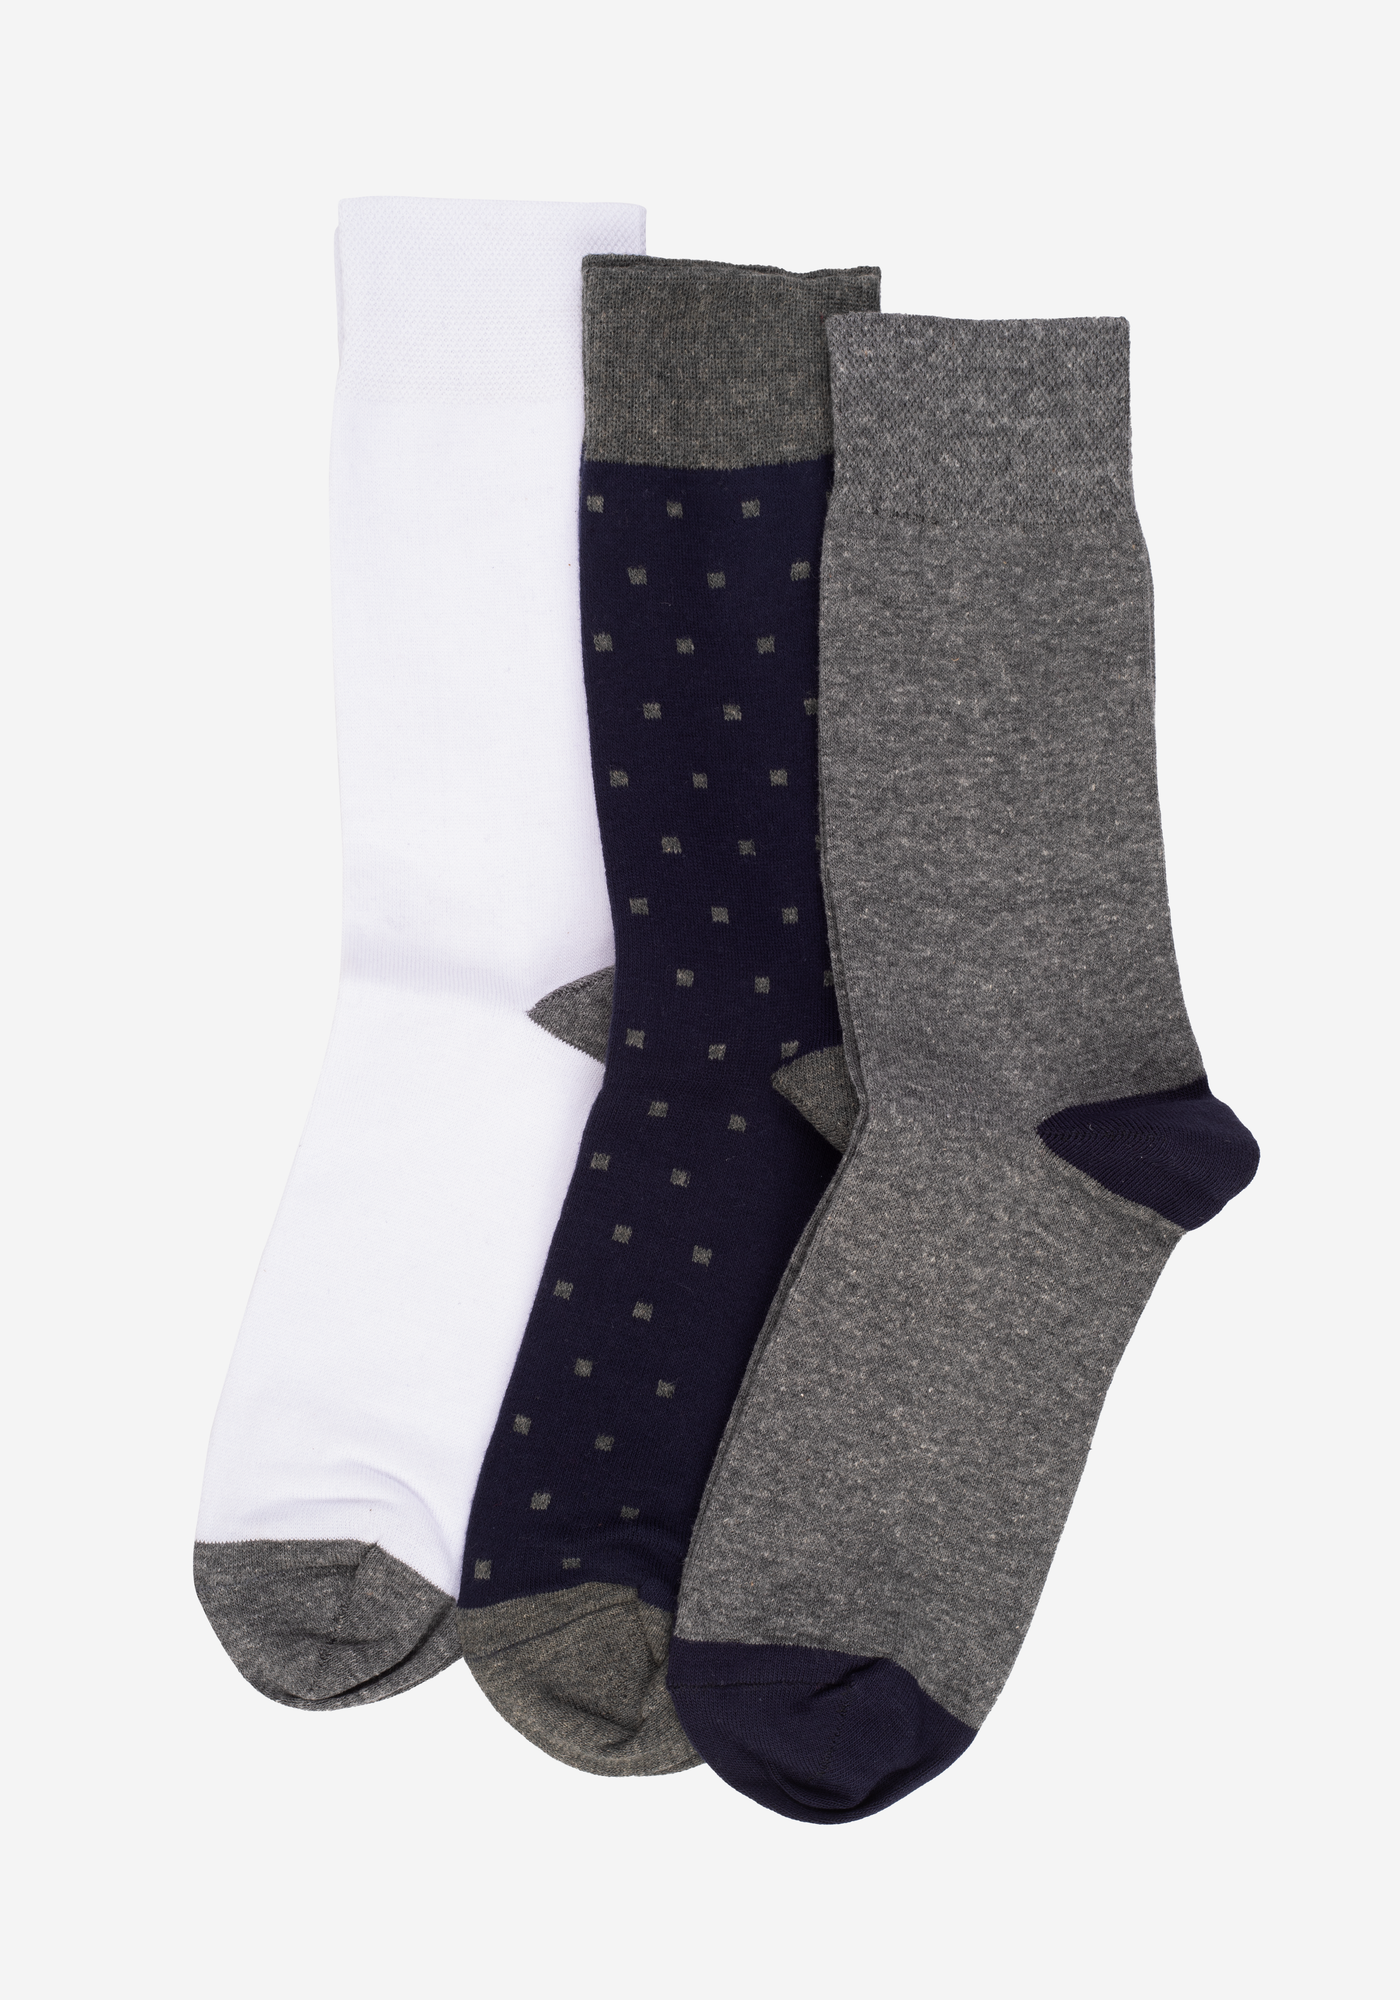 P3*1-702-9-1 / 3 Long Socks Pack